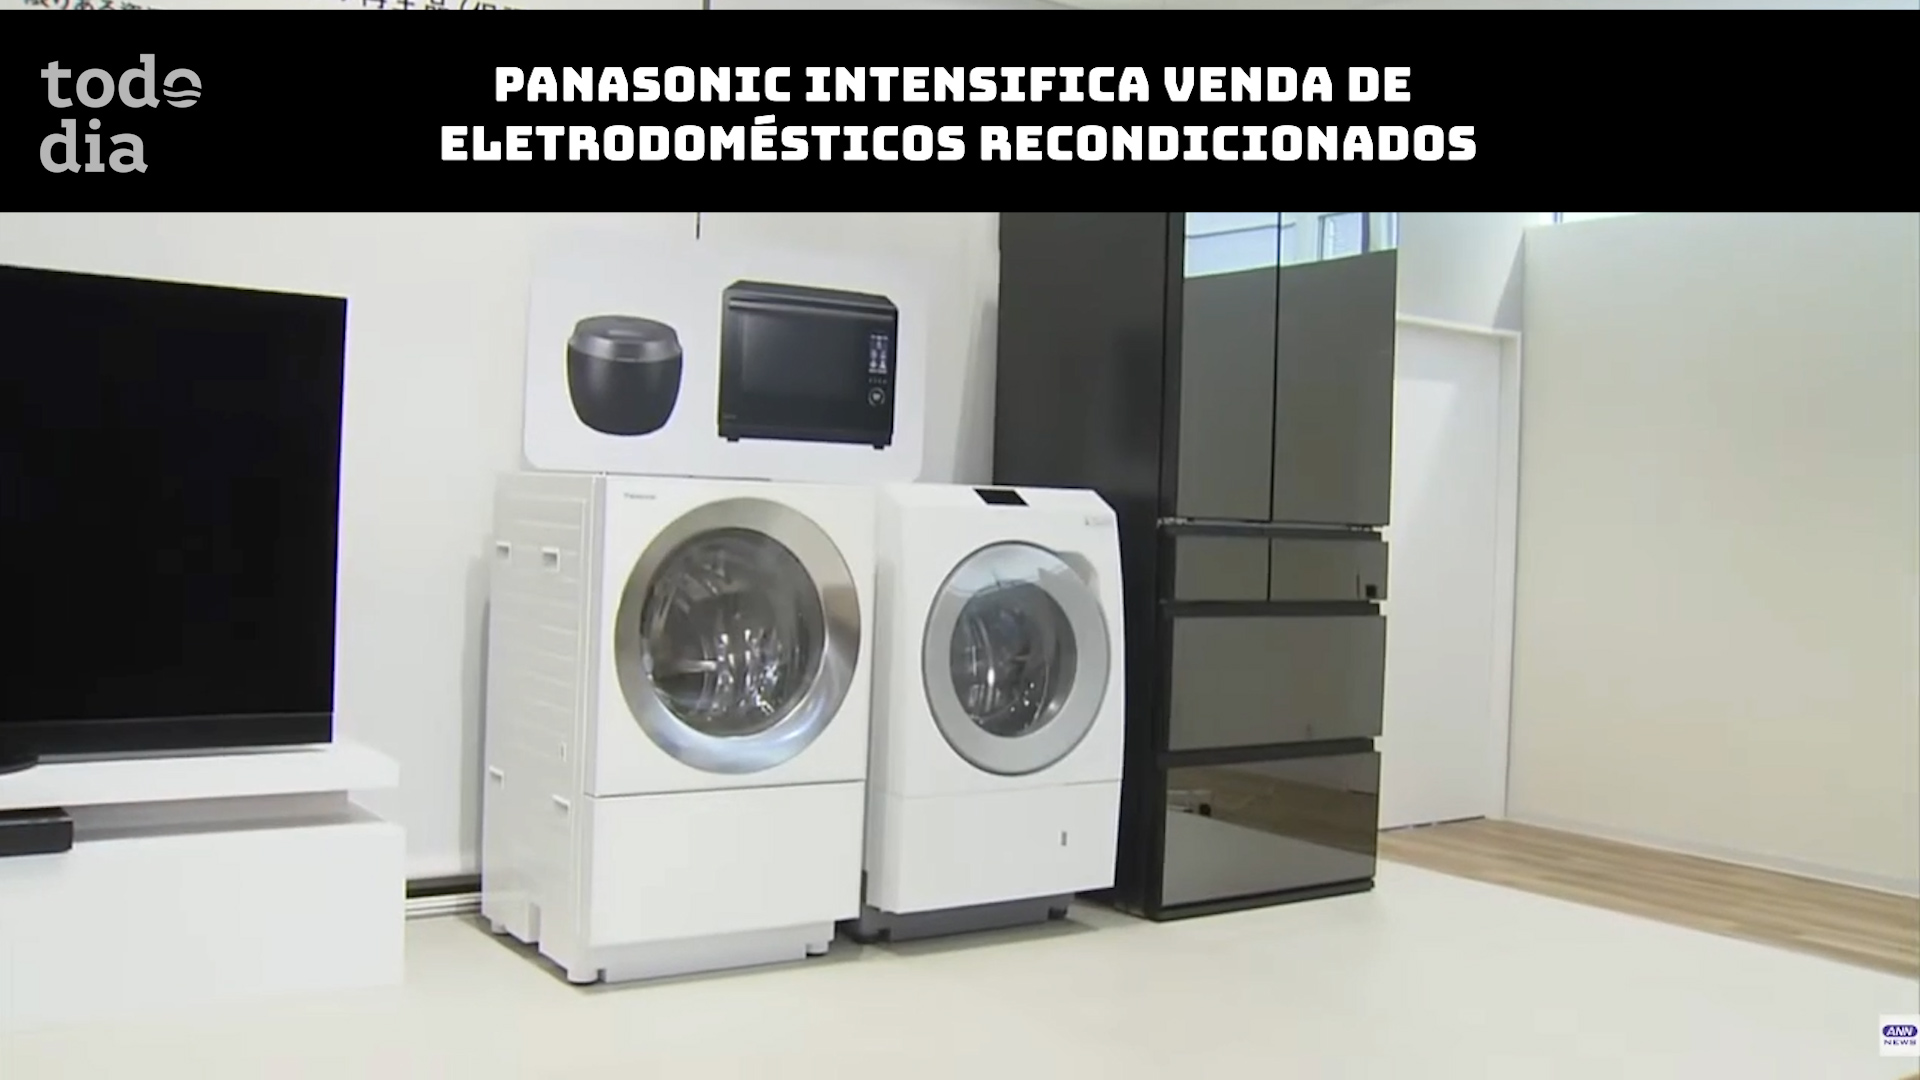 Panasonic intensifica venda de eletrodomésticos recondicionados no Japão 